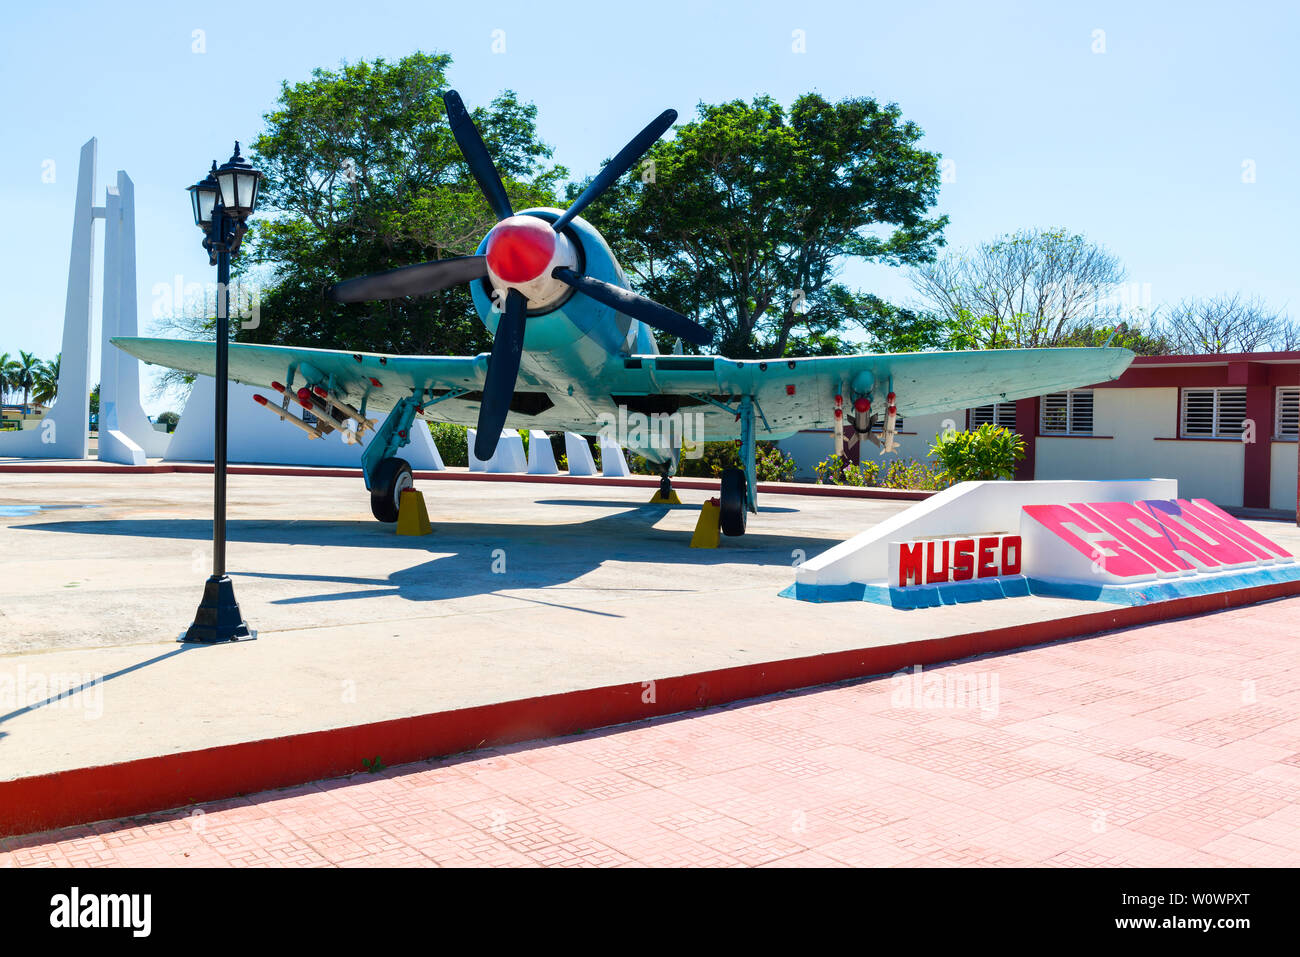 Hawker Sea Fury (britische Kampfflugzeuge) am Eingang des Museo de Playa Giron oder die Bucht von Schweinen Museum, Playa Giron, Kuba geparkt Stockfoto